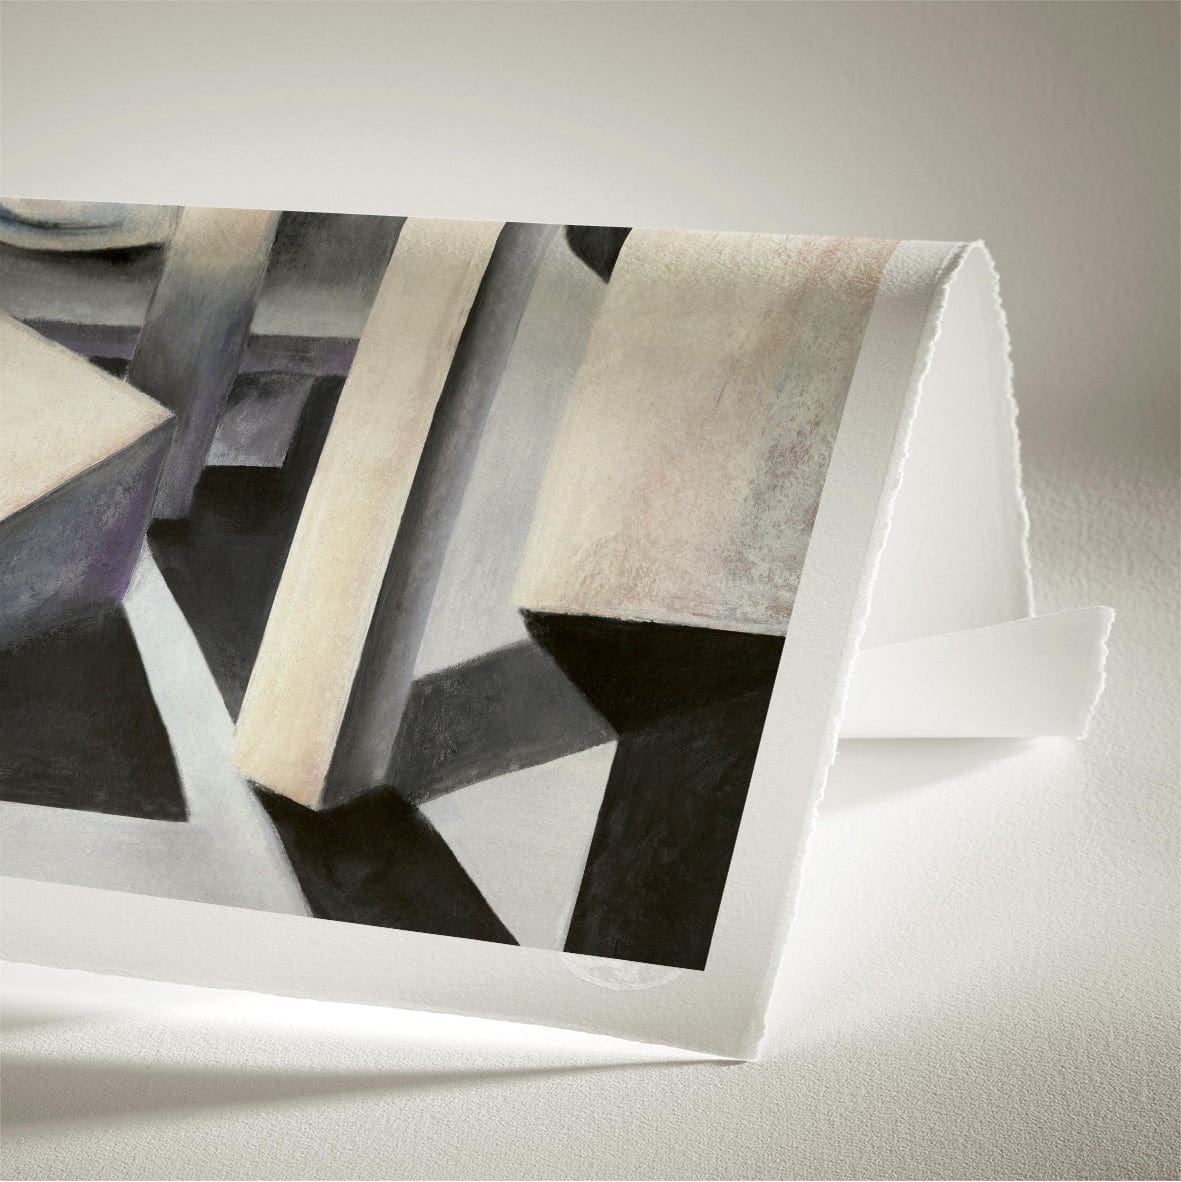 Grey Construction - Artist Paper - Colour Collection 50 x 70 cm Artist Paper